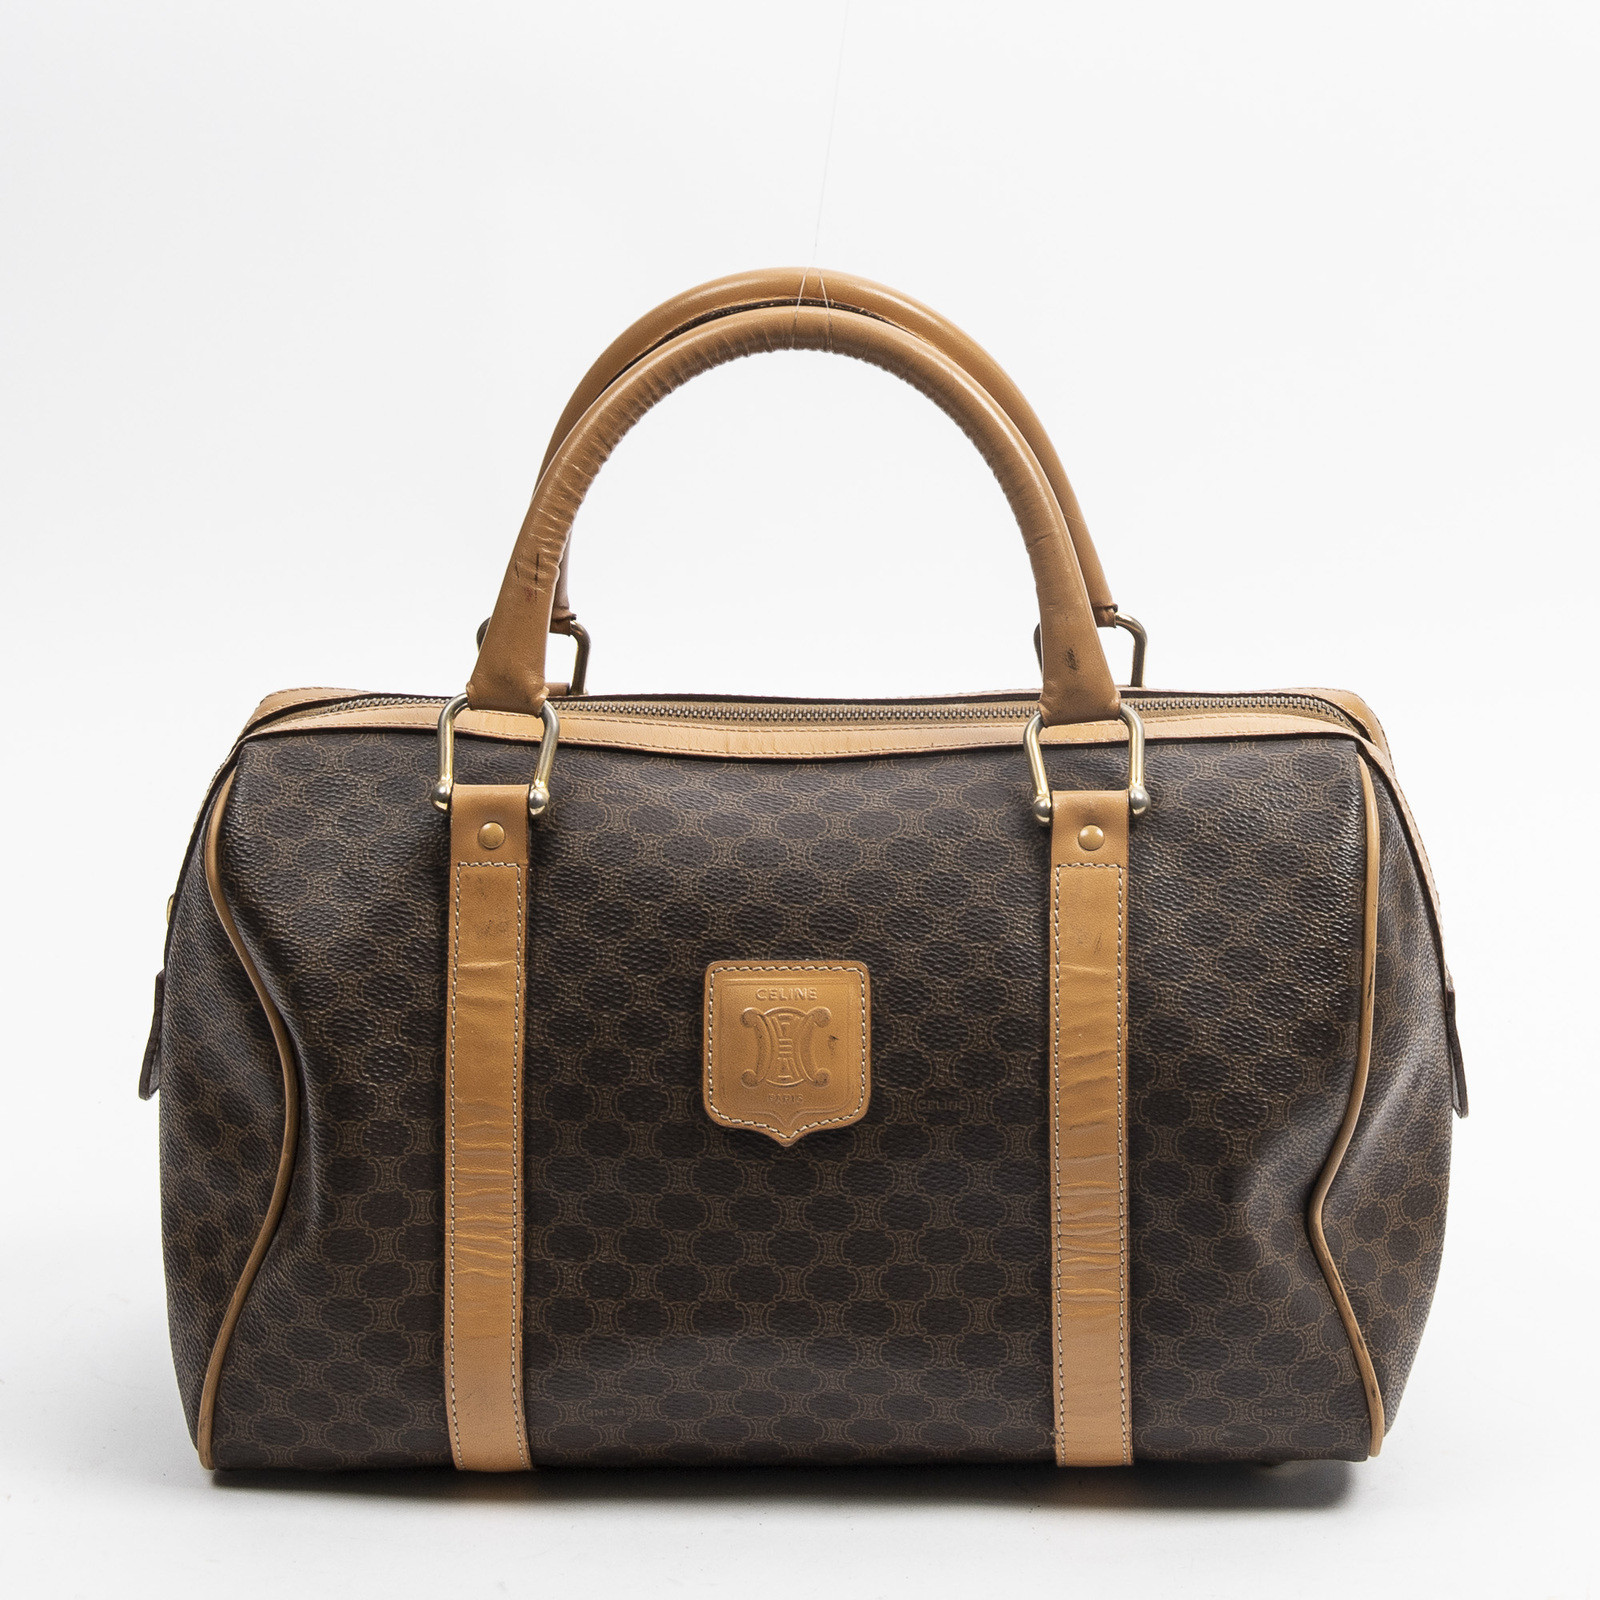 Céline Handbag Canvas in Brown - Acheter Céline Handbag Canvas in Brown d' occasion pour 306€ (6741005)